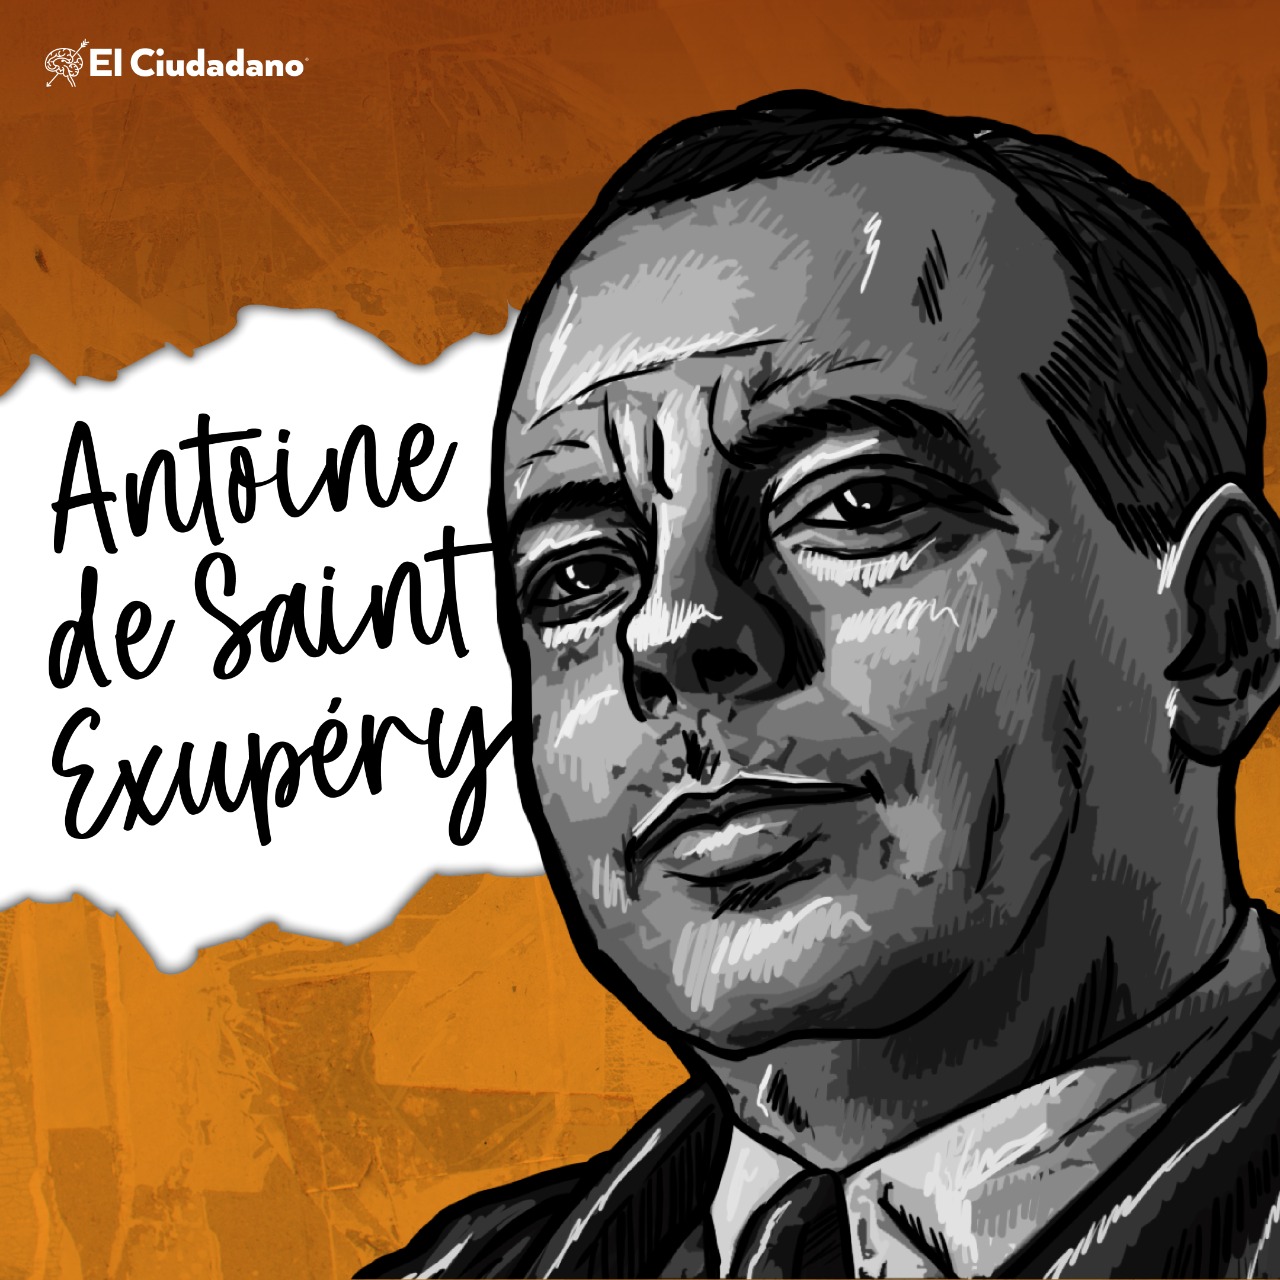 Antoine de Saint Exupery